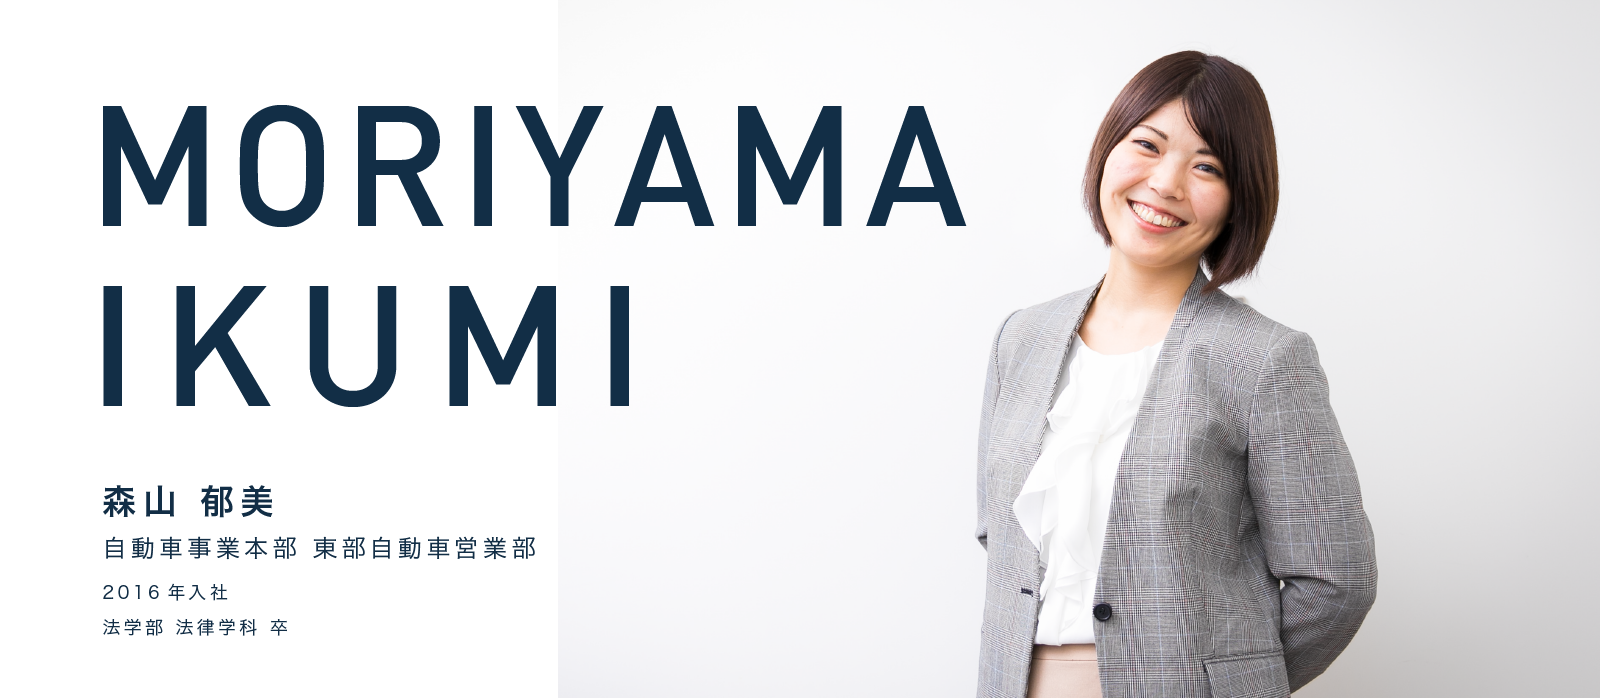 MORIYAMA IKUMI　森山 郁美　自動車事業本部 東部自動車営業部　2016年入社　法学部 法律学科 卒